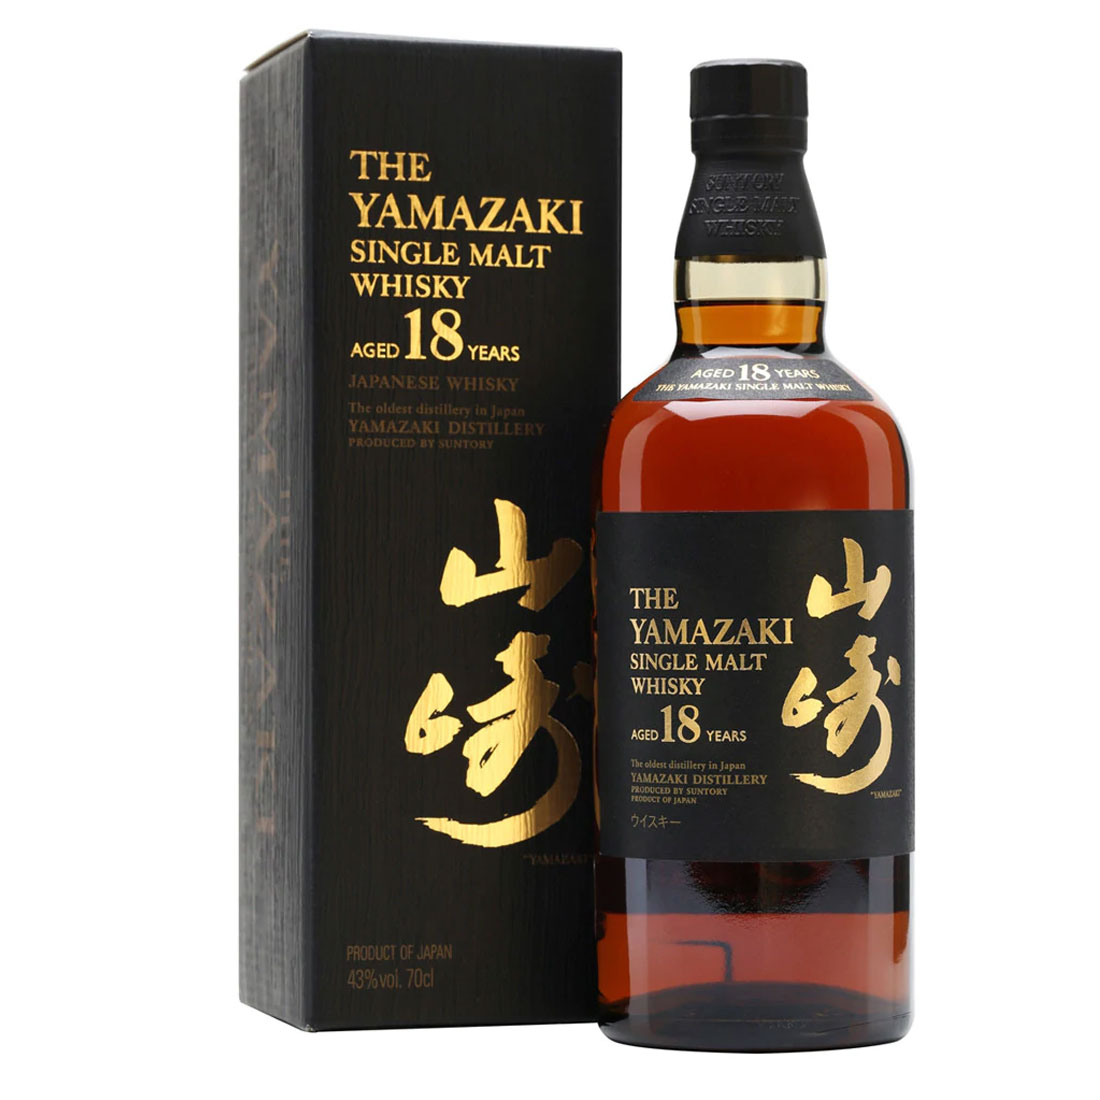 Bottle-Yamazaki-Aged-18-Years-Single-Malt-Japanese-Whisky-Old-Packaging